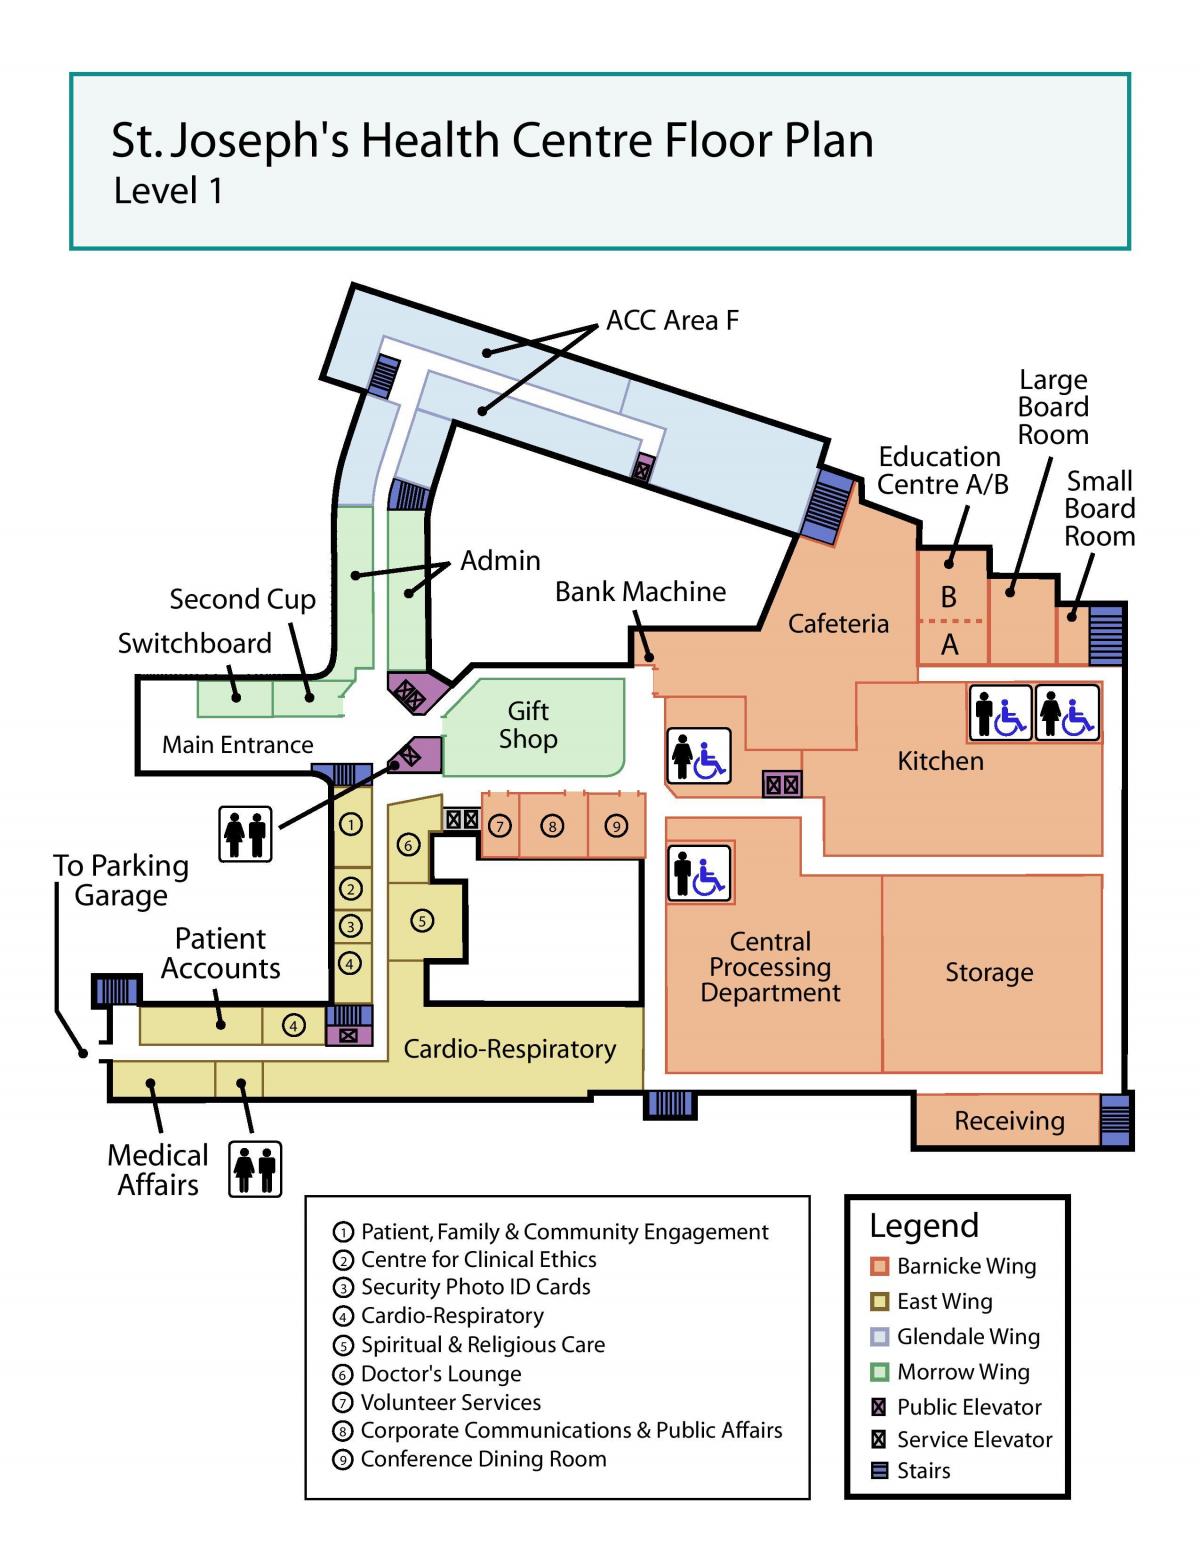 Harta e Shën Jozefit në qendrën Shëndetësore të Torontos niveli 1